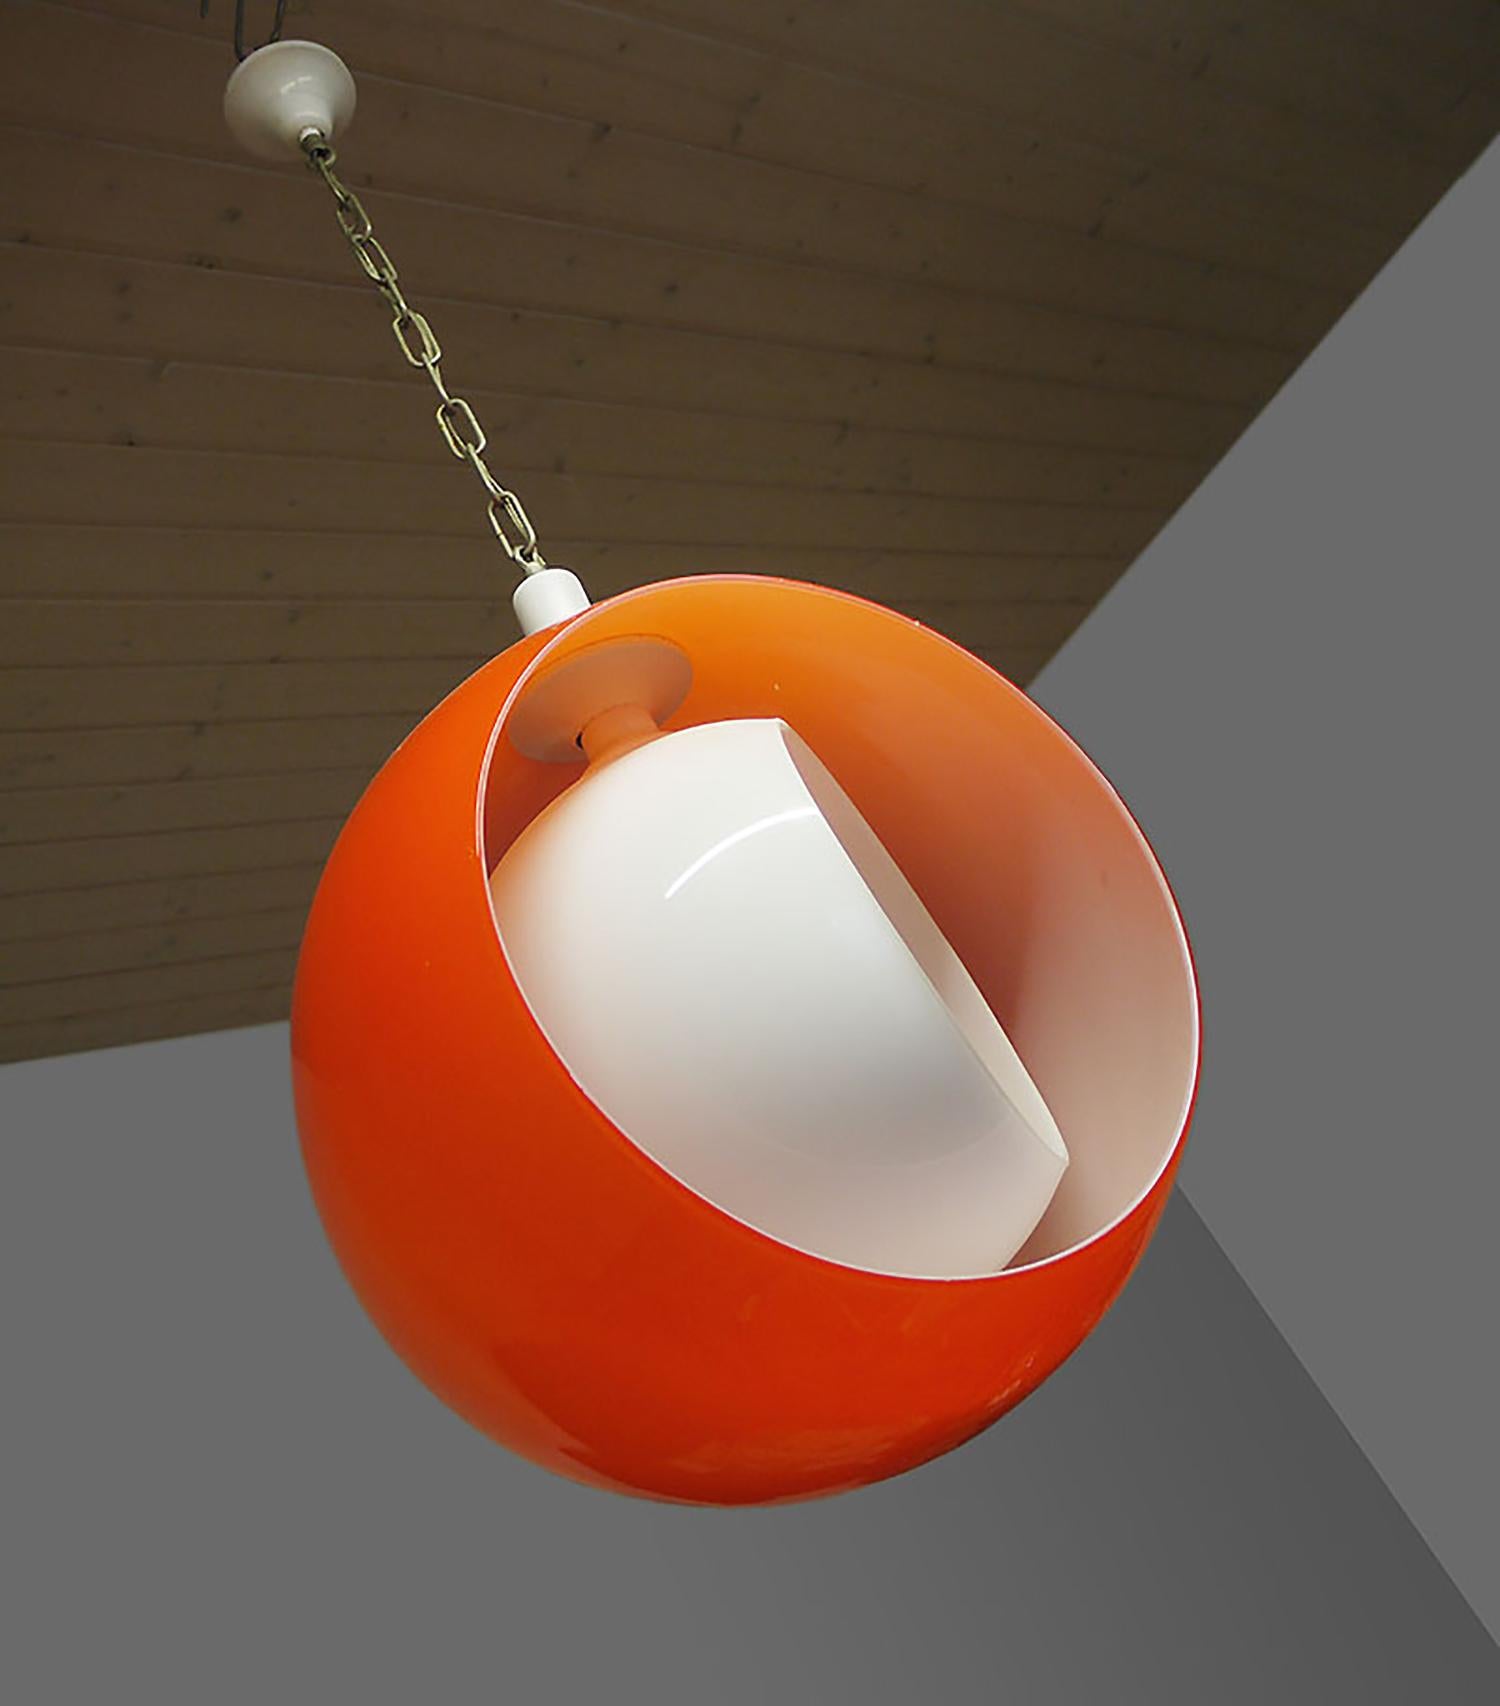 Murano Glass Moon Pendant Lamp Orange White by Carlo Nason for Mazzega 1960s For Sale 2